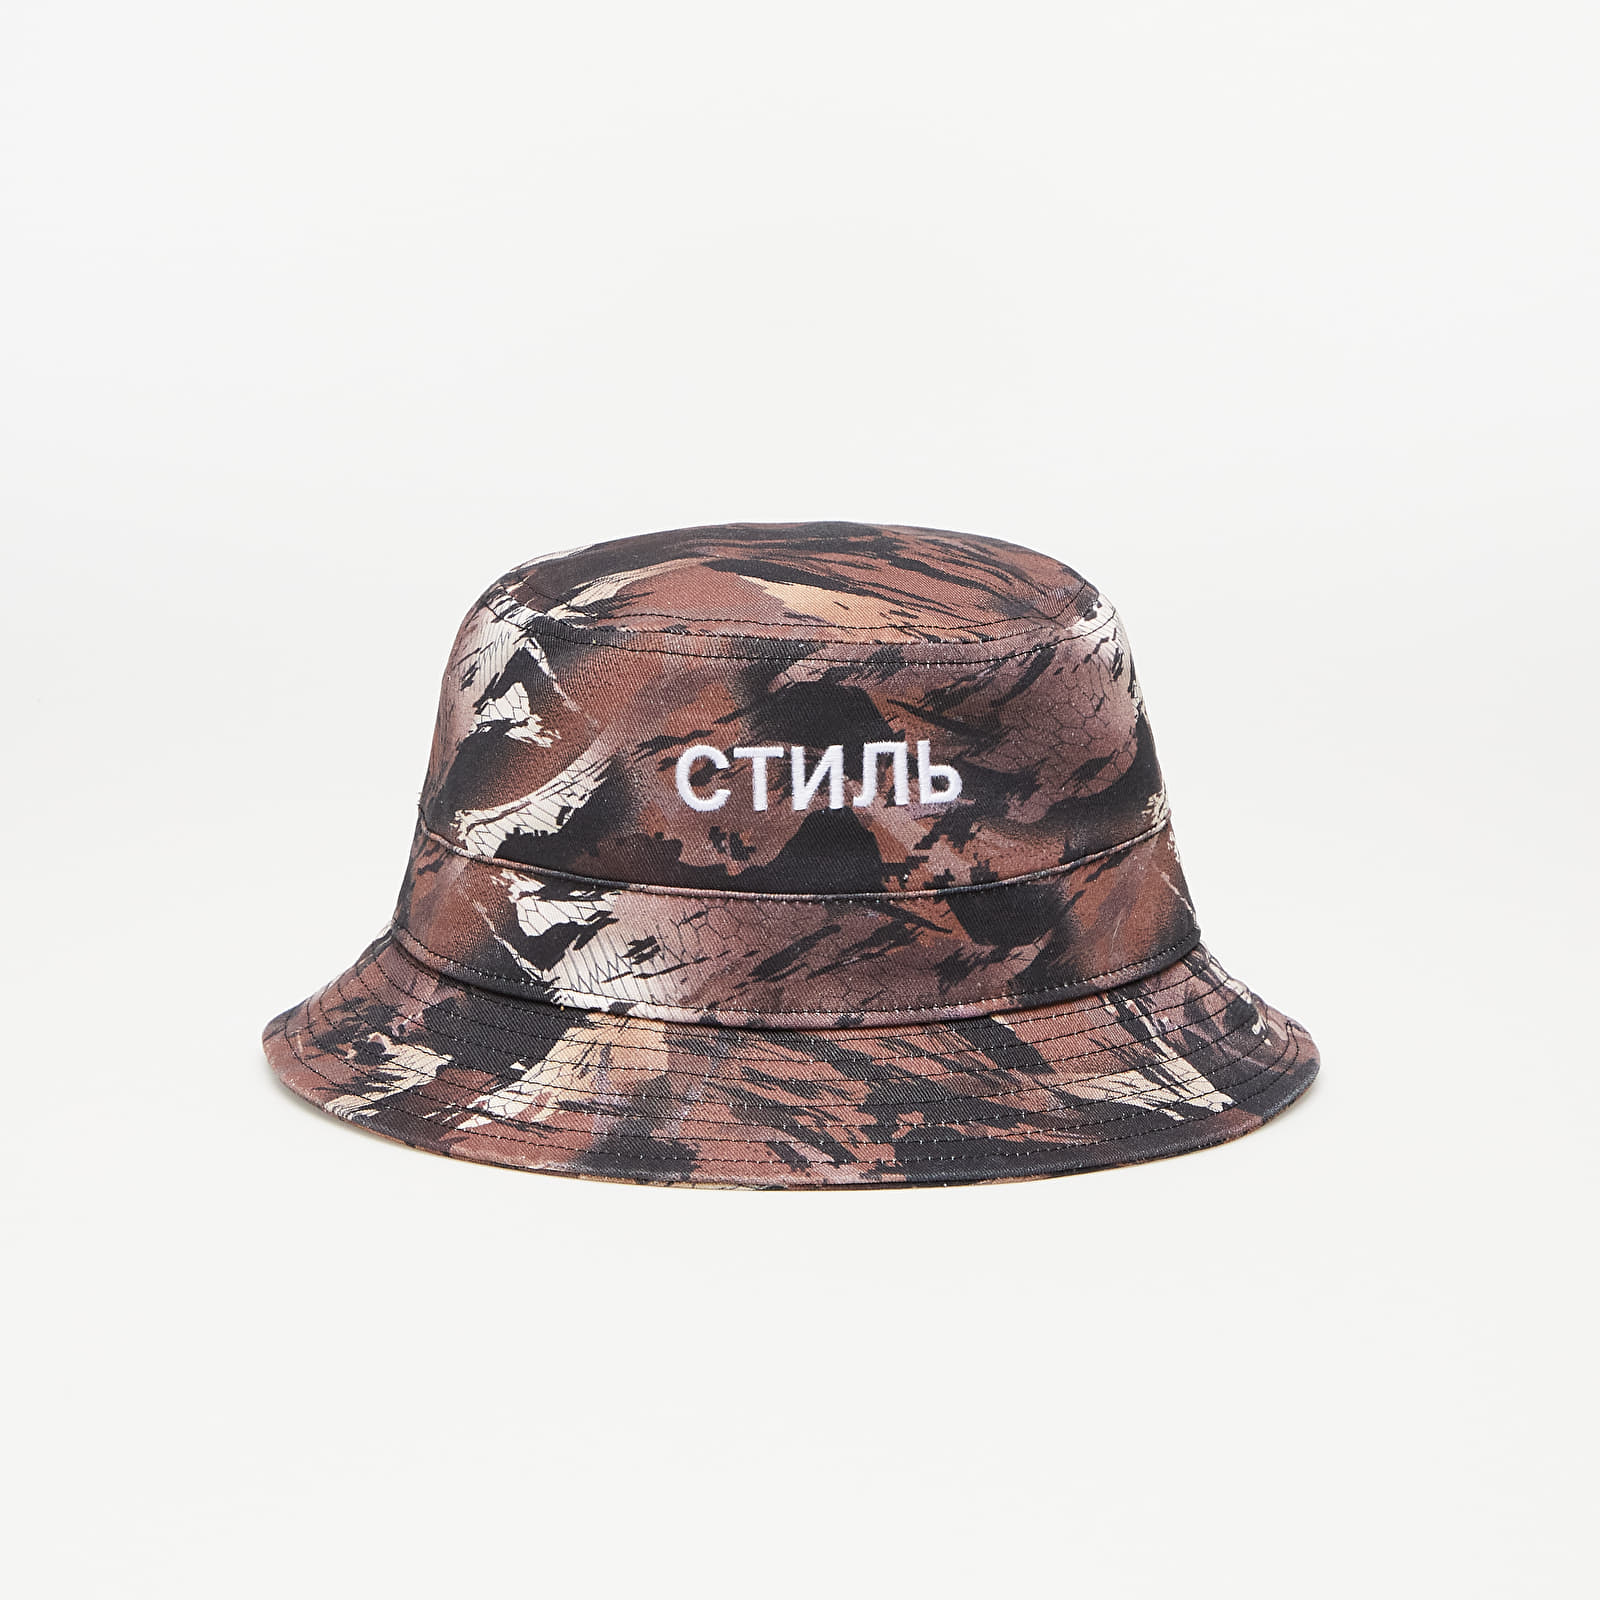 HERON PRESTON Ctnmb Camo Bucket Hat